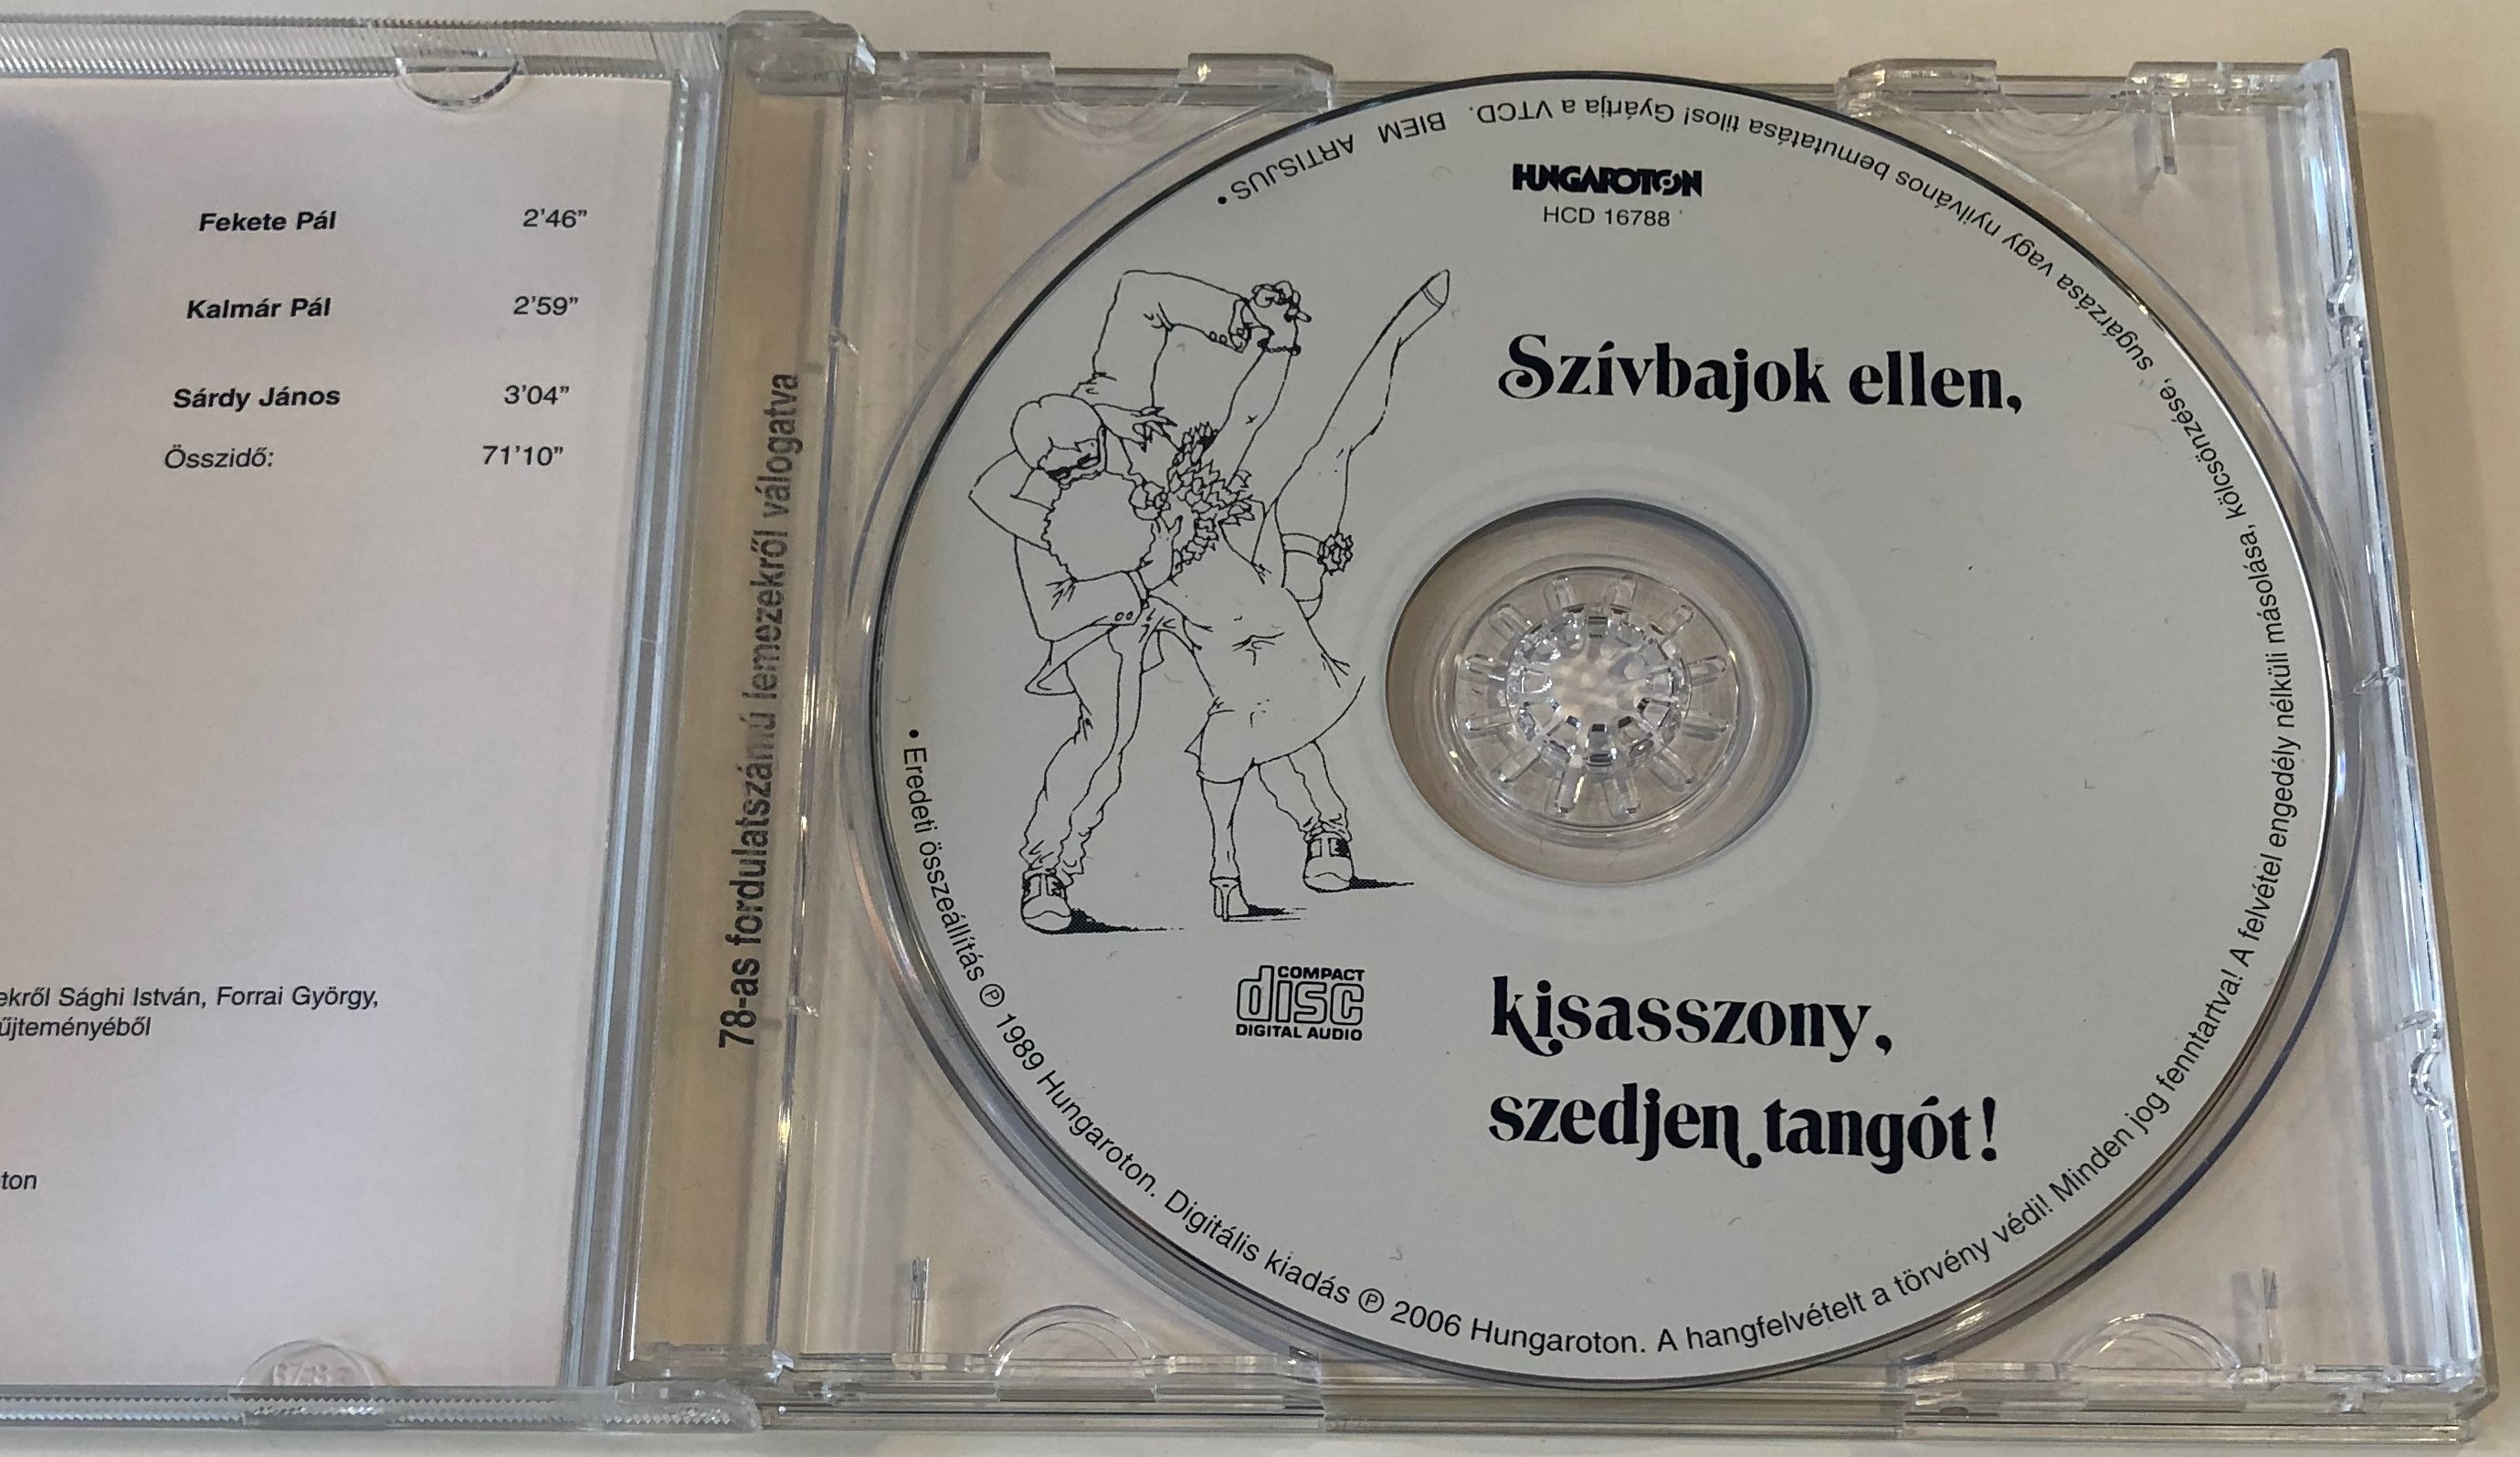 szivbajok-ellen-kisasszony-szedjen-tangot-regi-tangosikerek-eredeti-felvetei-hungaroton-audio-cd-1989-hcd-16788-3-.jpg